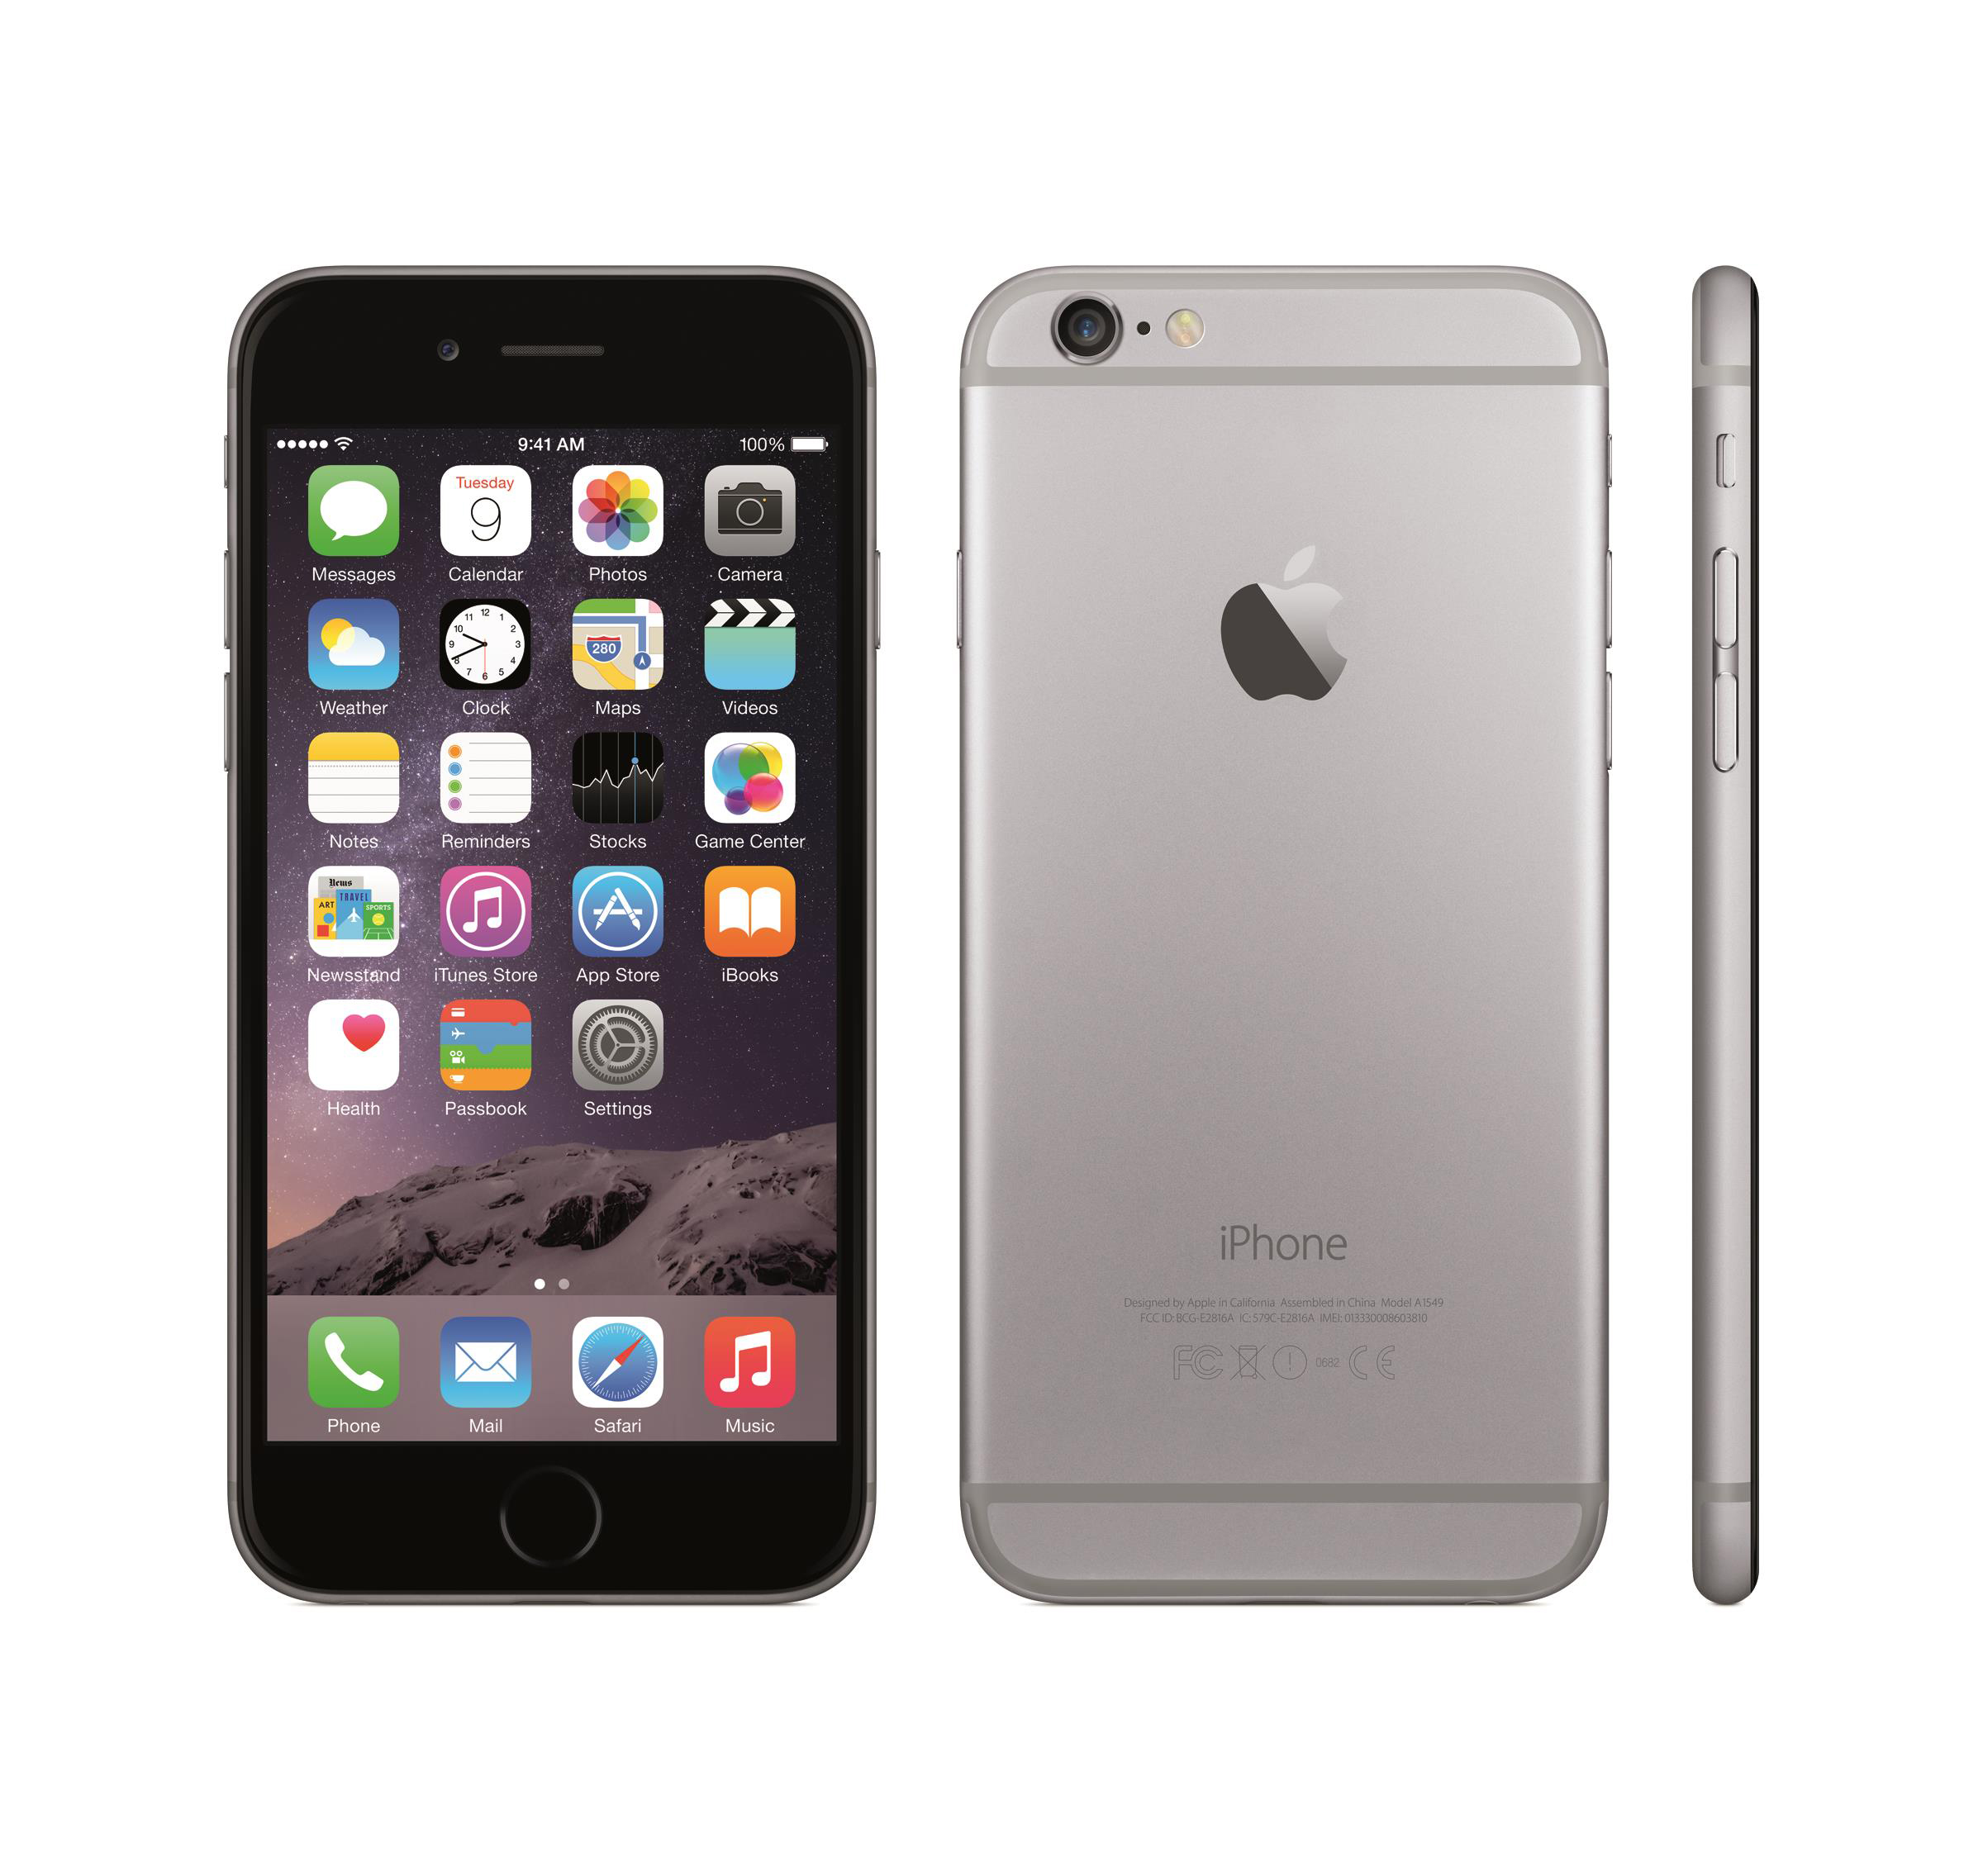 iPhone 6 costaría hasta 00 USD en el mercado negro